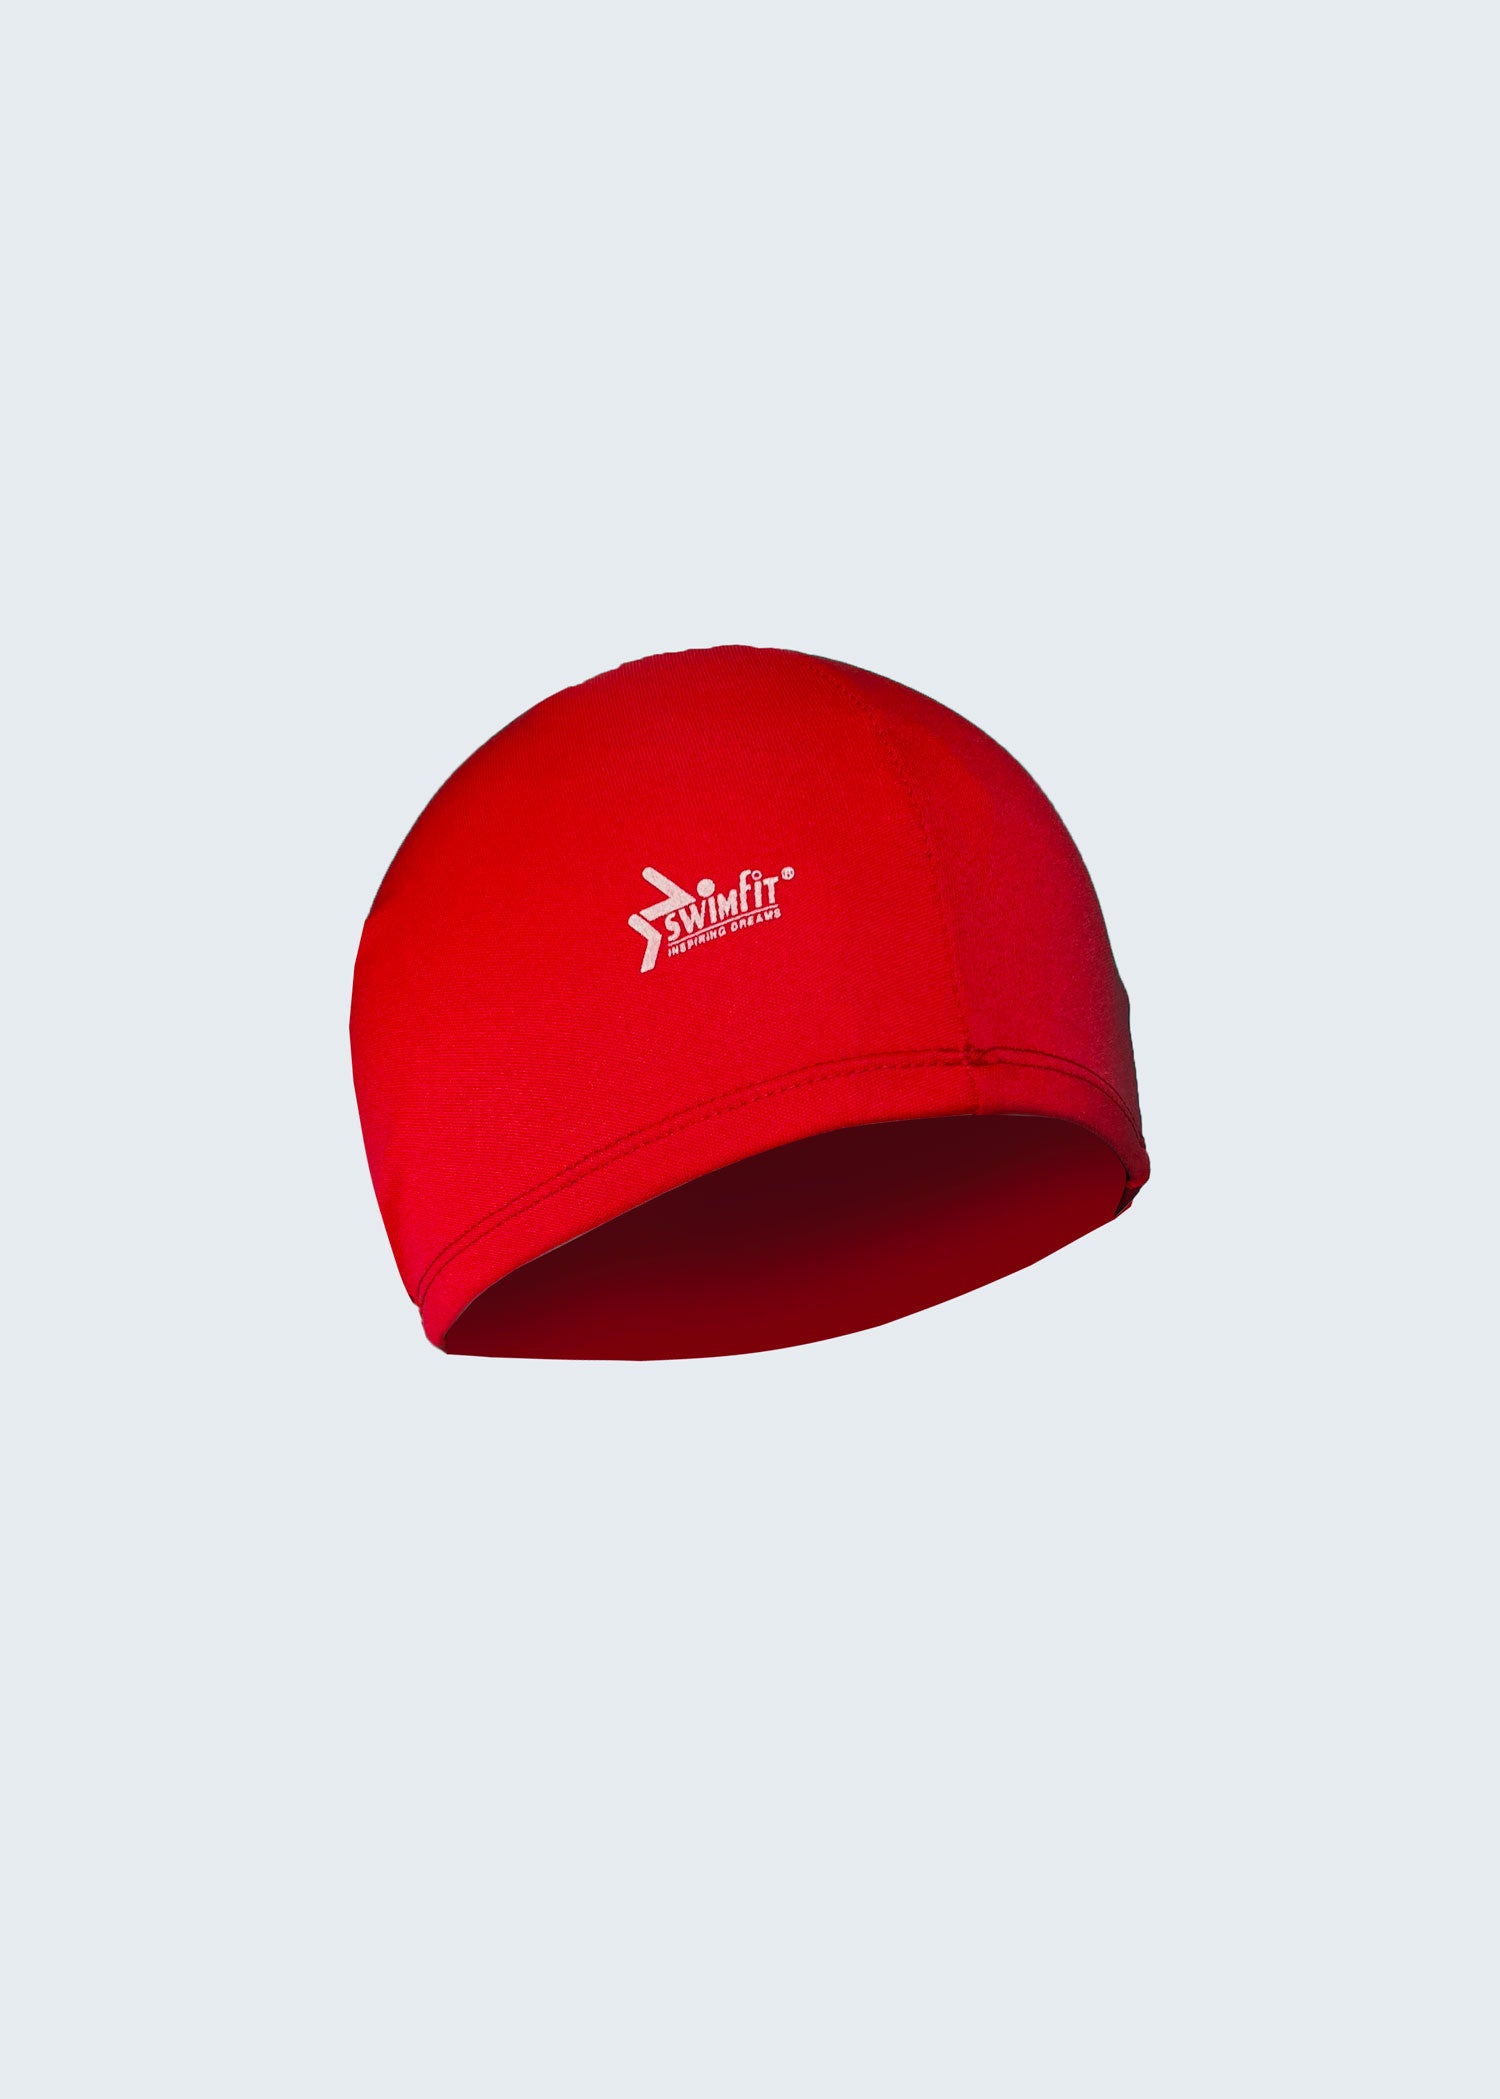 כובע ים לייקרה Swimfit אדום - לויטקס Levitex